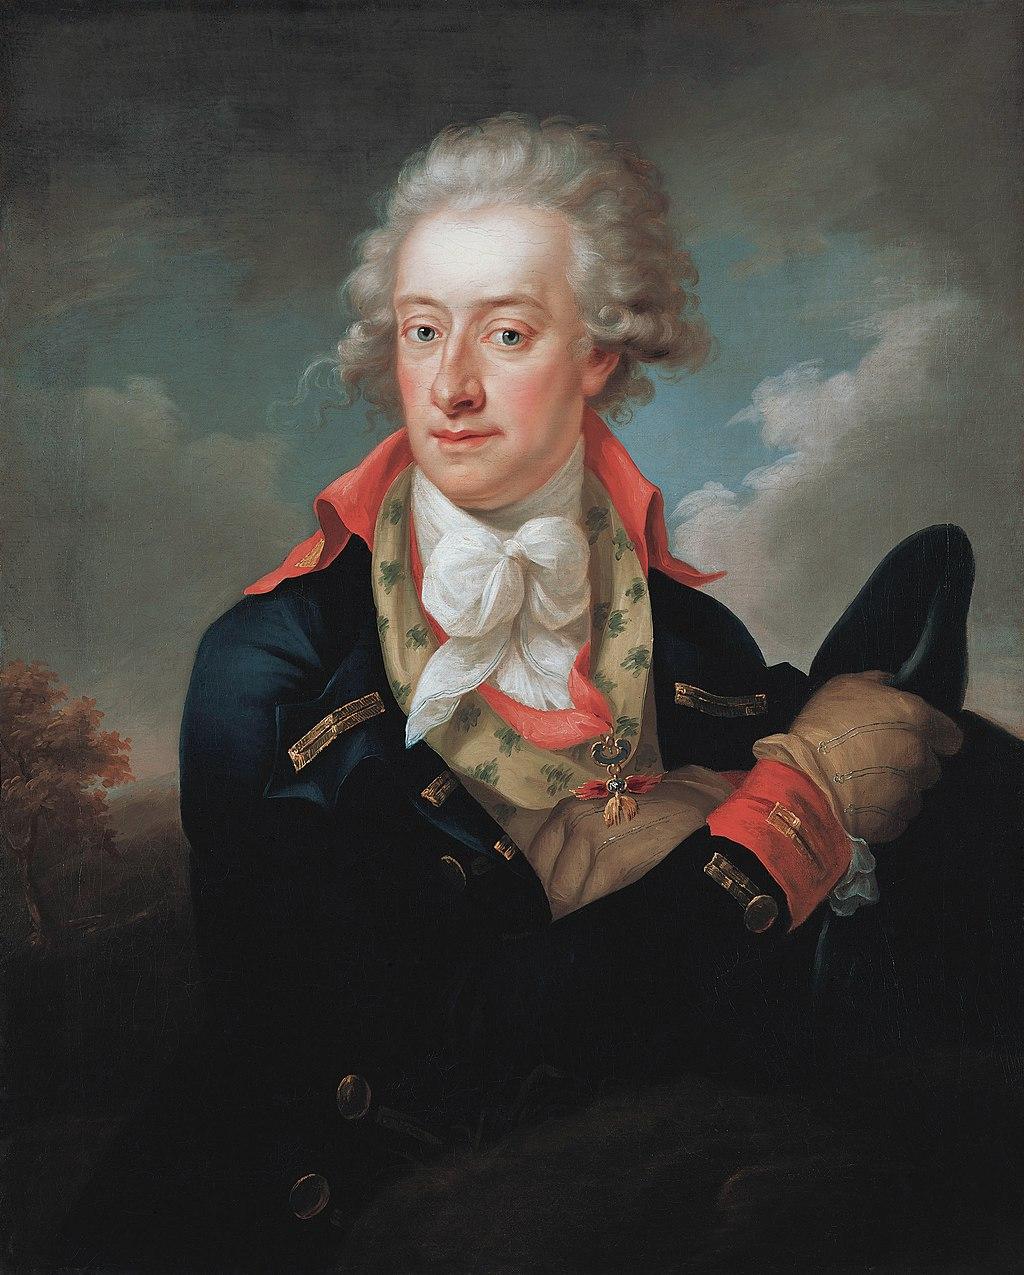 Prince Alois I von Liechtenstein, by Peter Eduard Ströhling (1793)